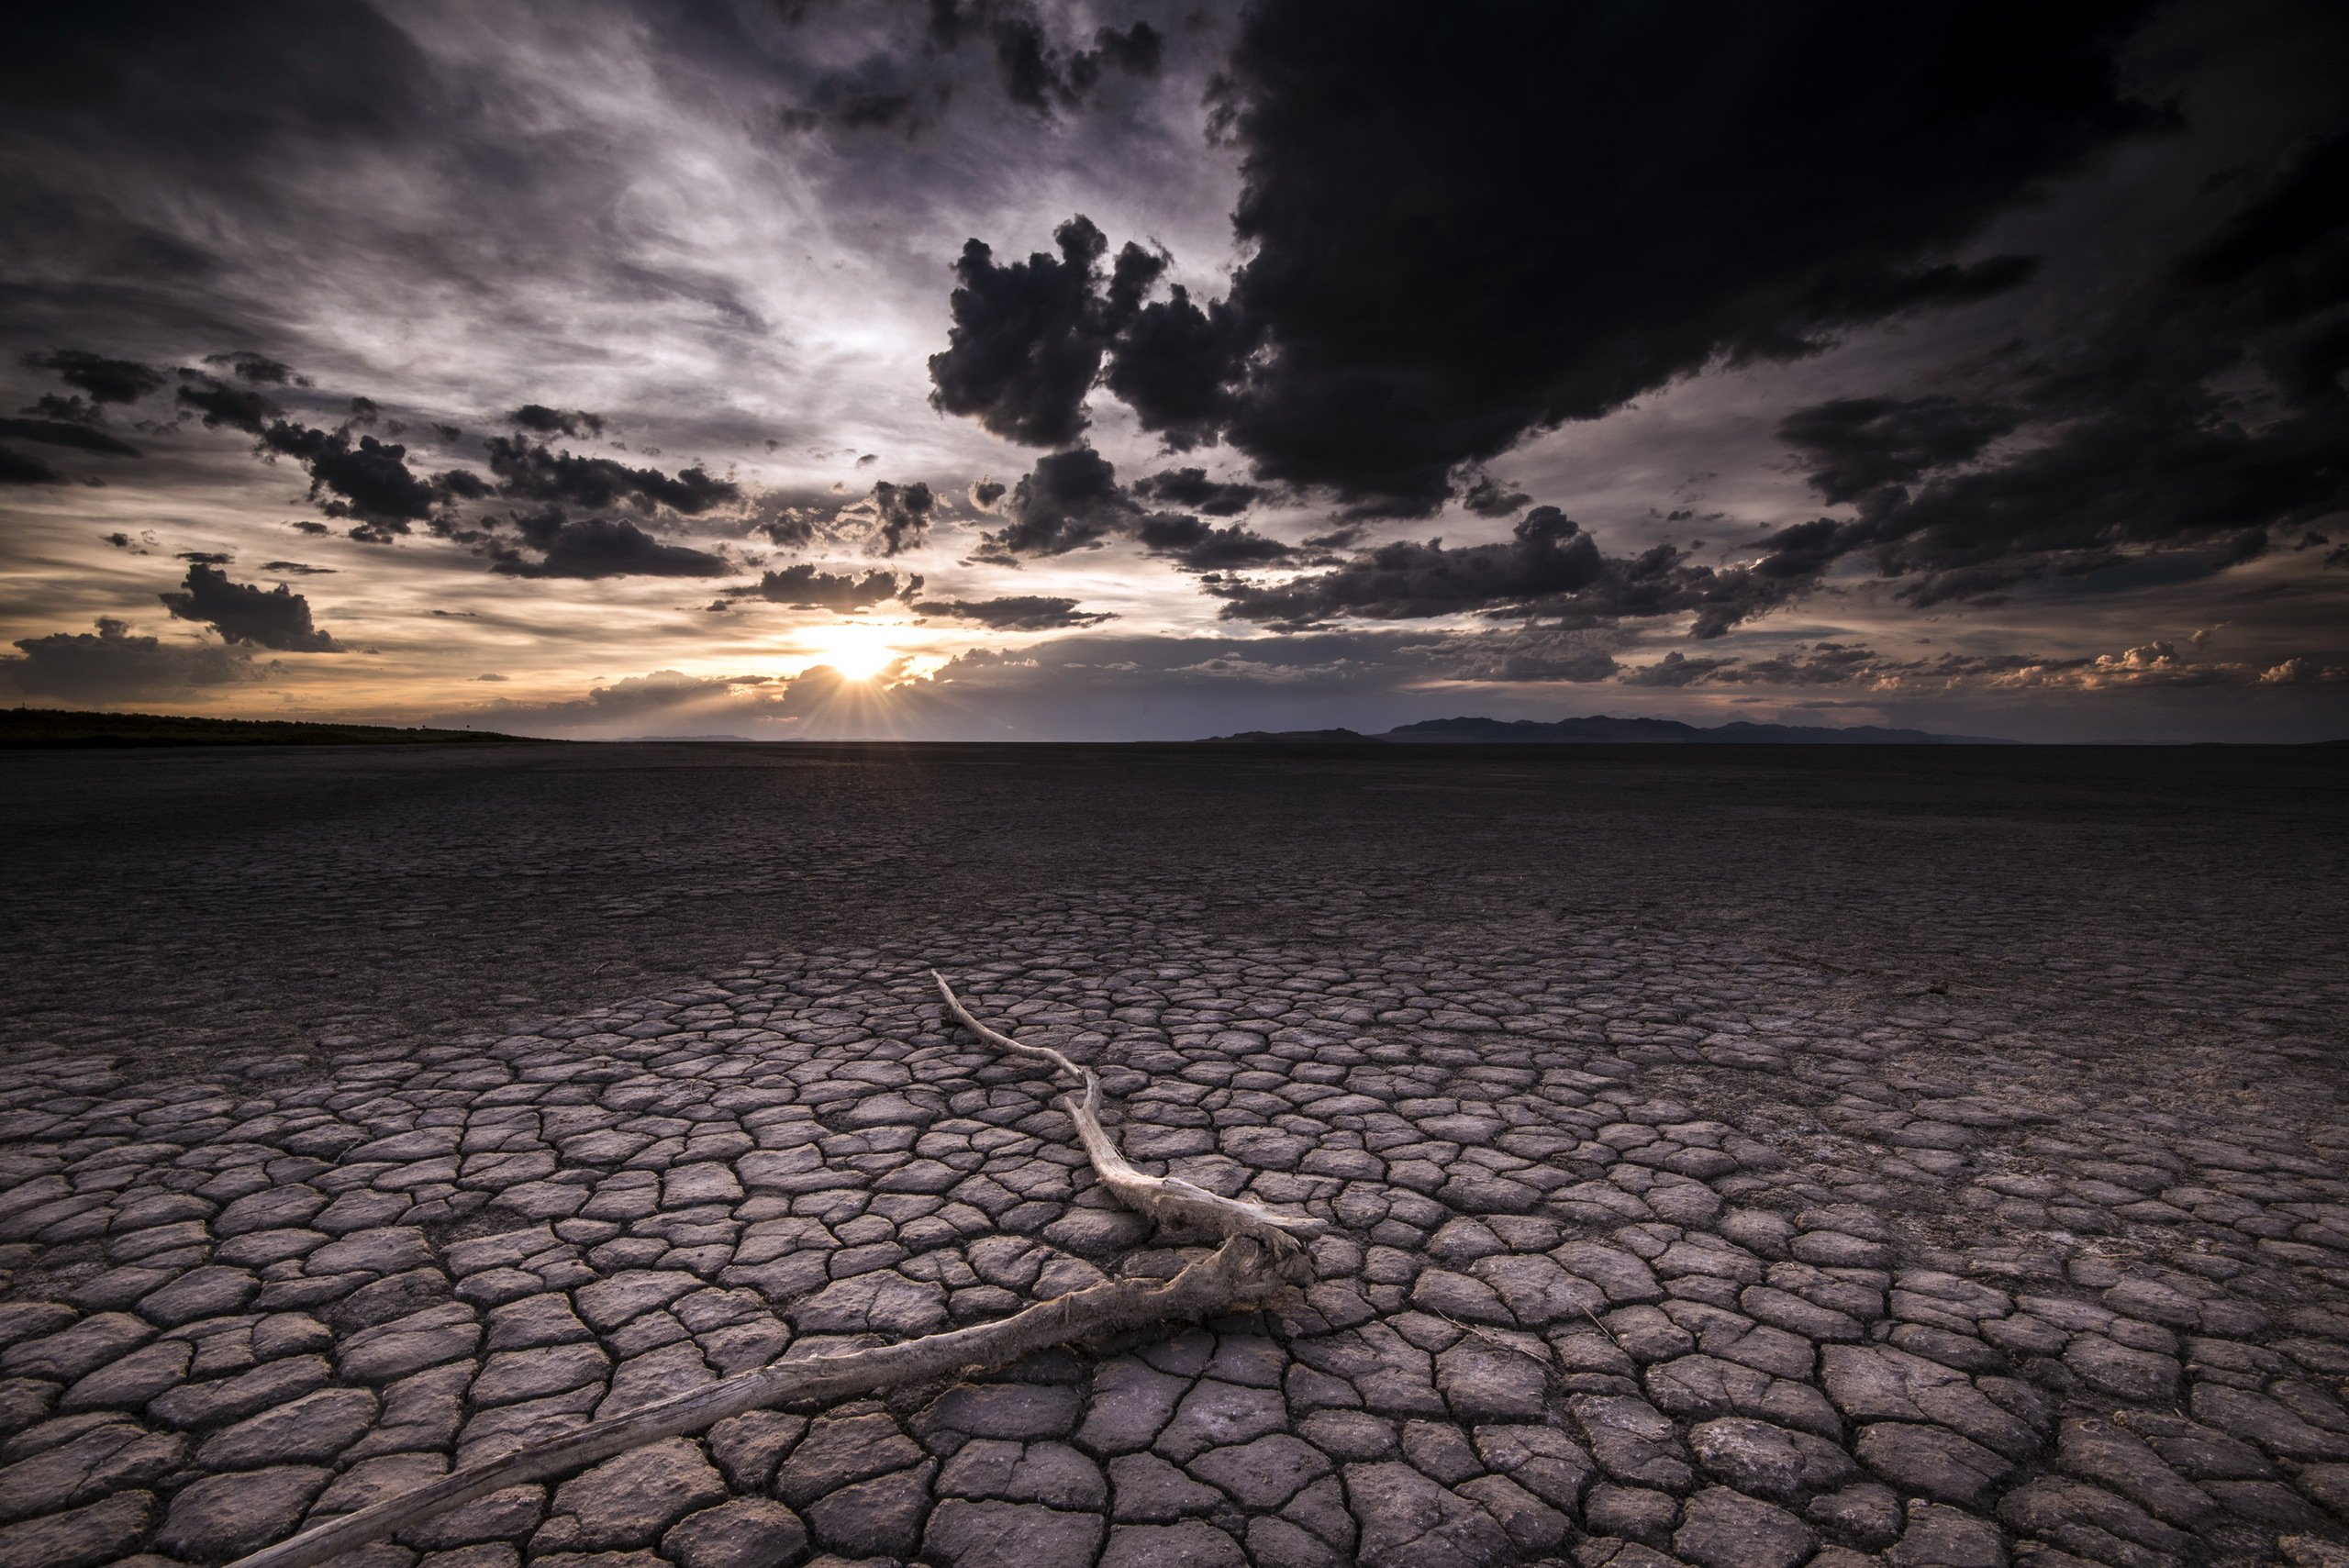 Dry Desert, HD Nature, 4k Wallpaper, Image, Background